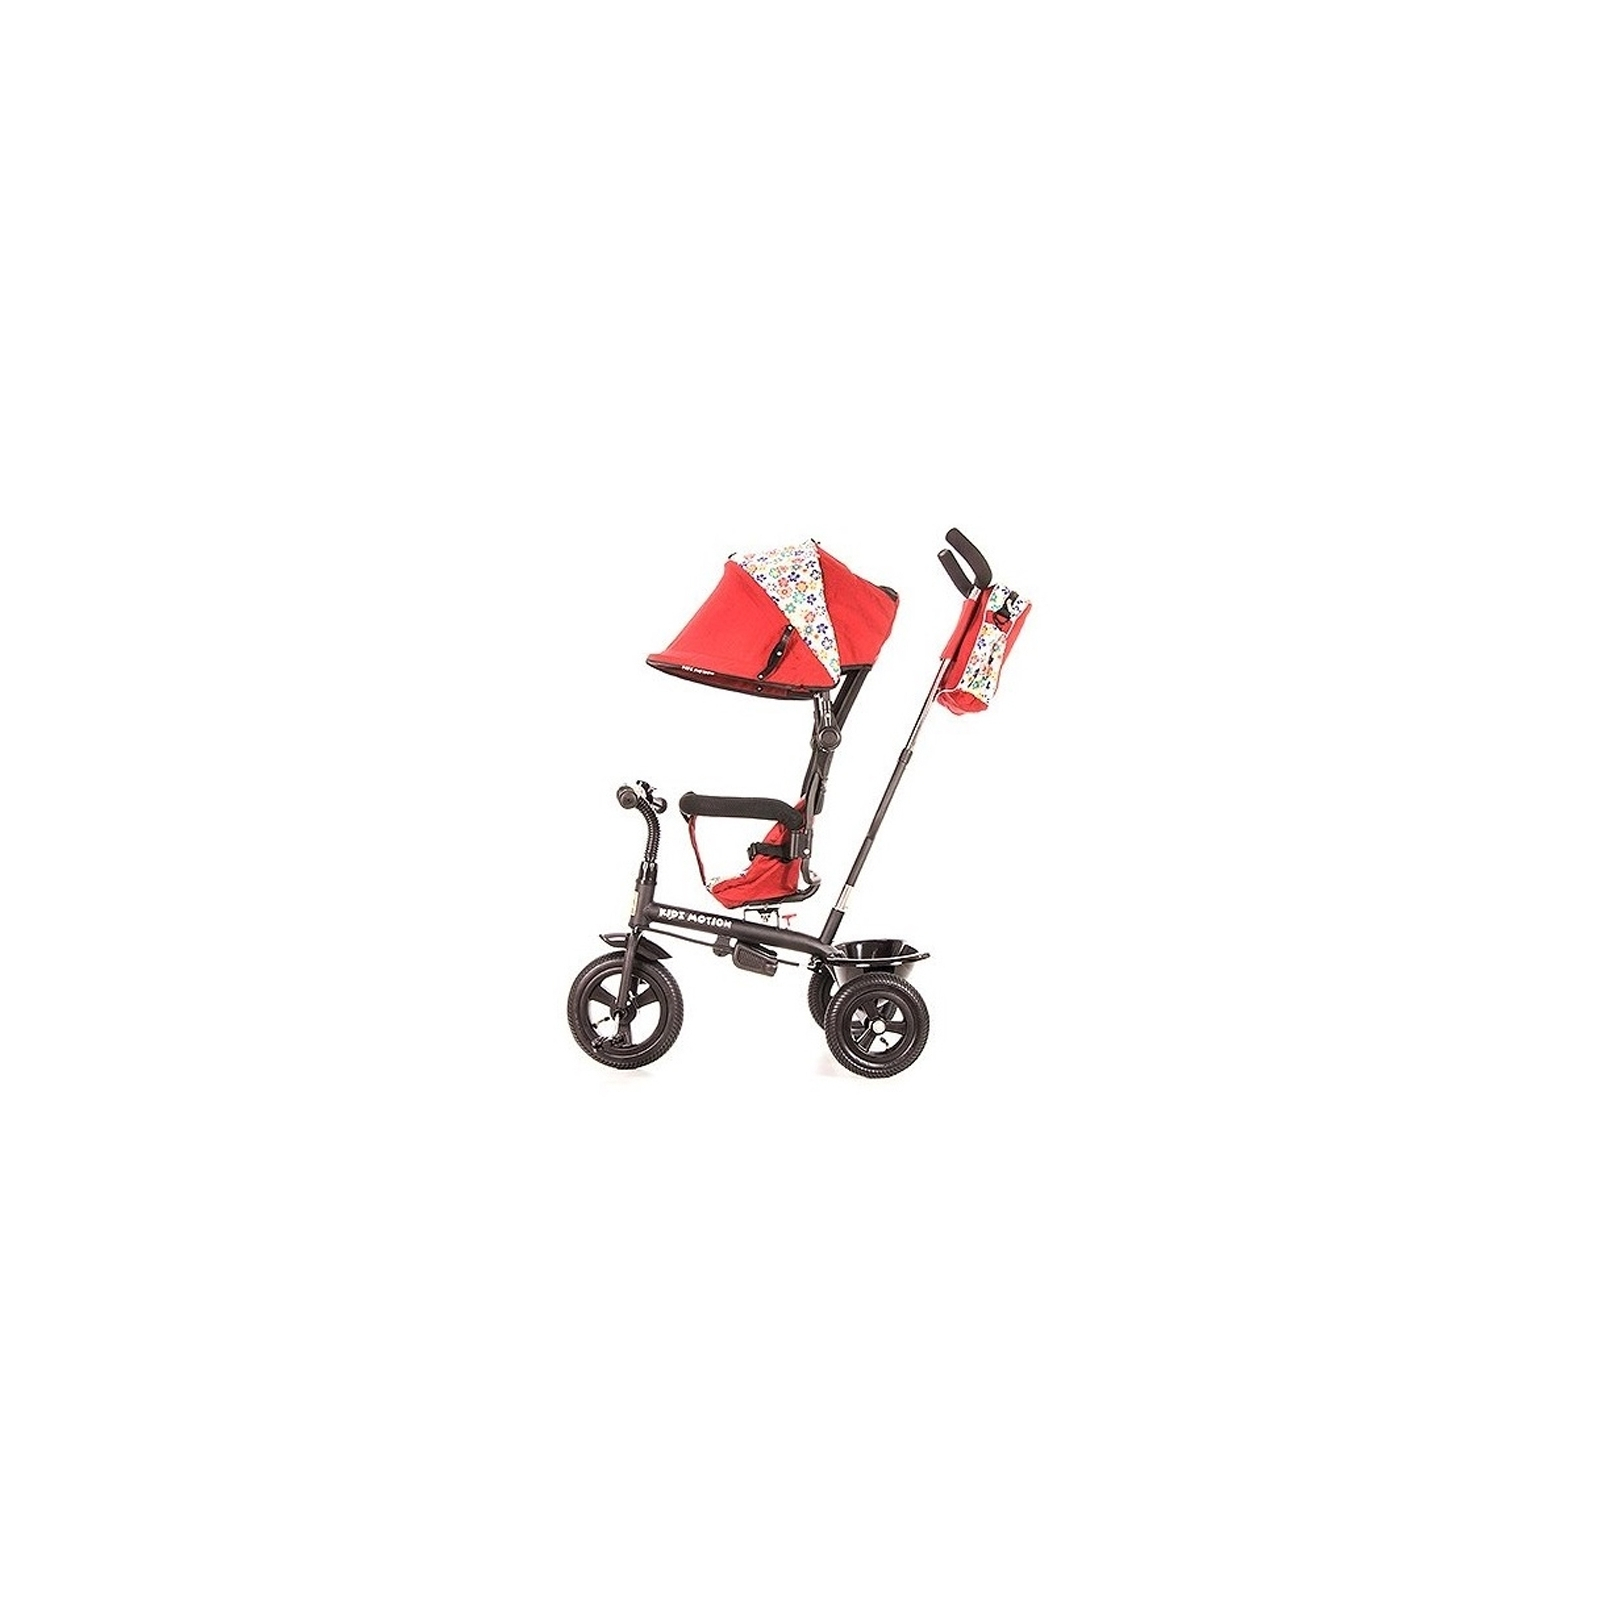 Детский велосипед KidzMotion Tobi Venture RED (115002/red) изображение 4